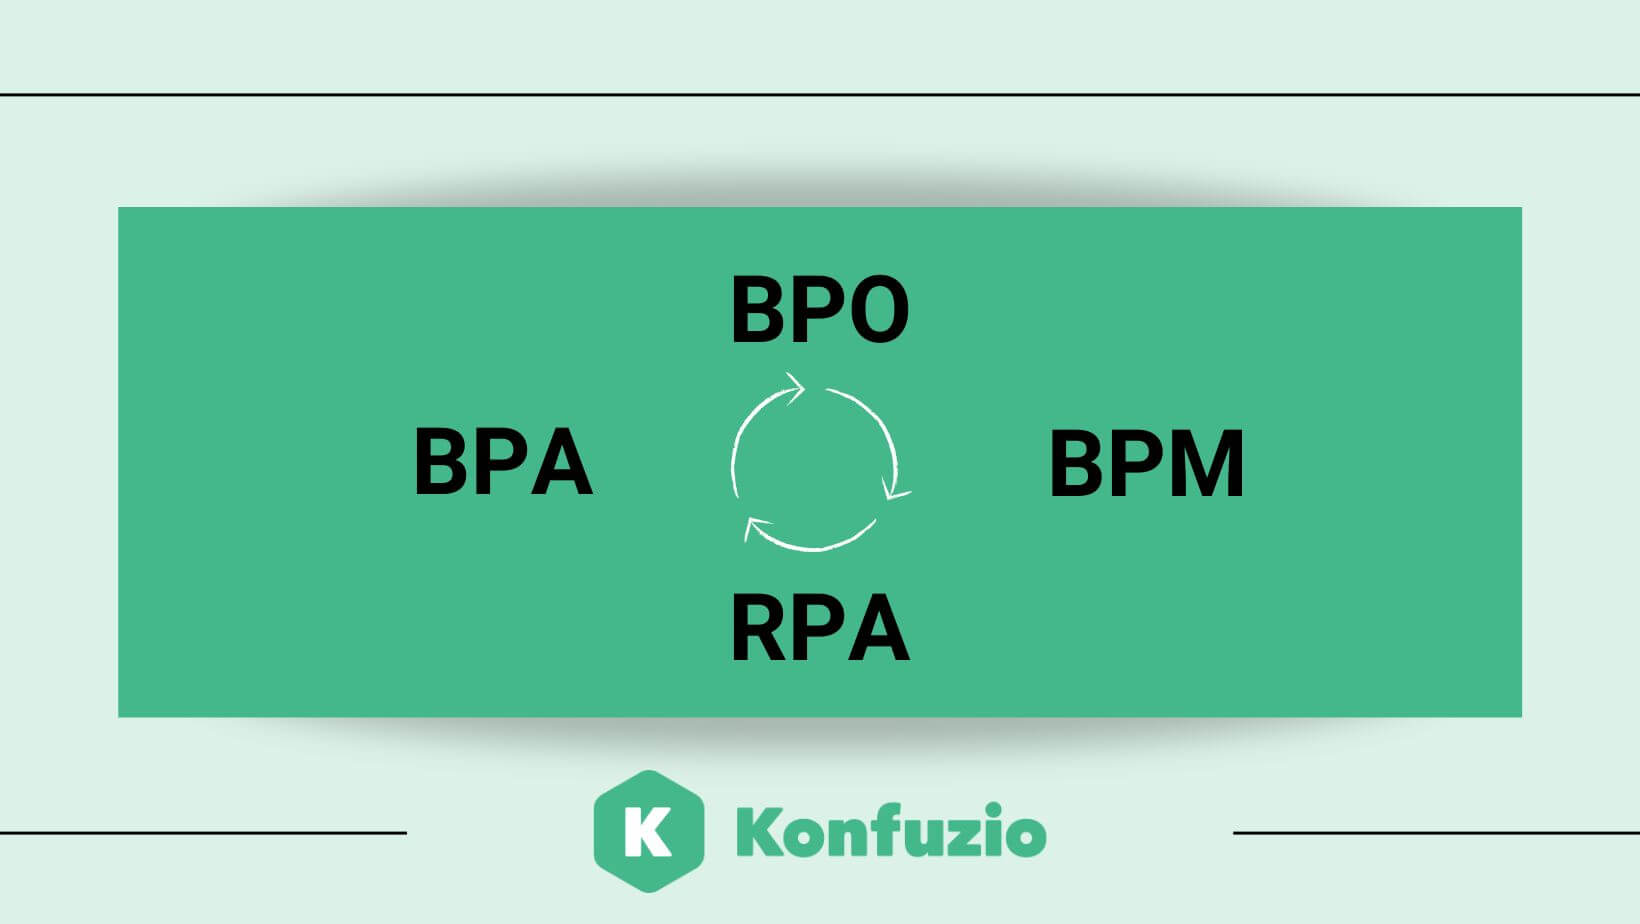 绿色背景下的BPA软件 BPO BPM RPA